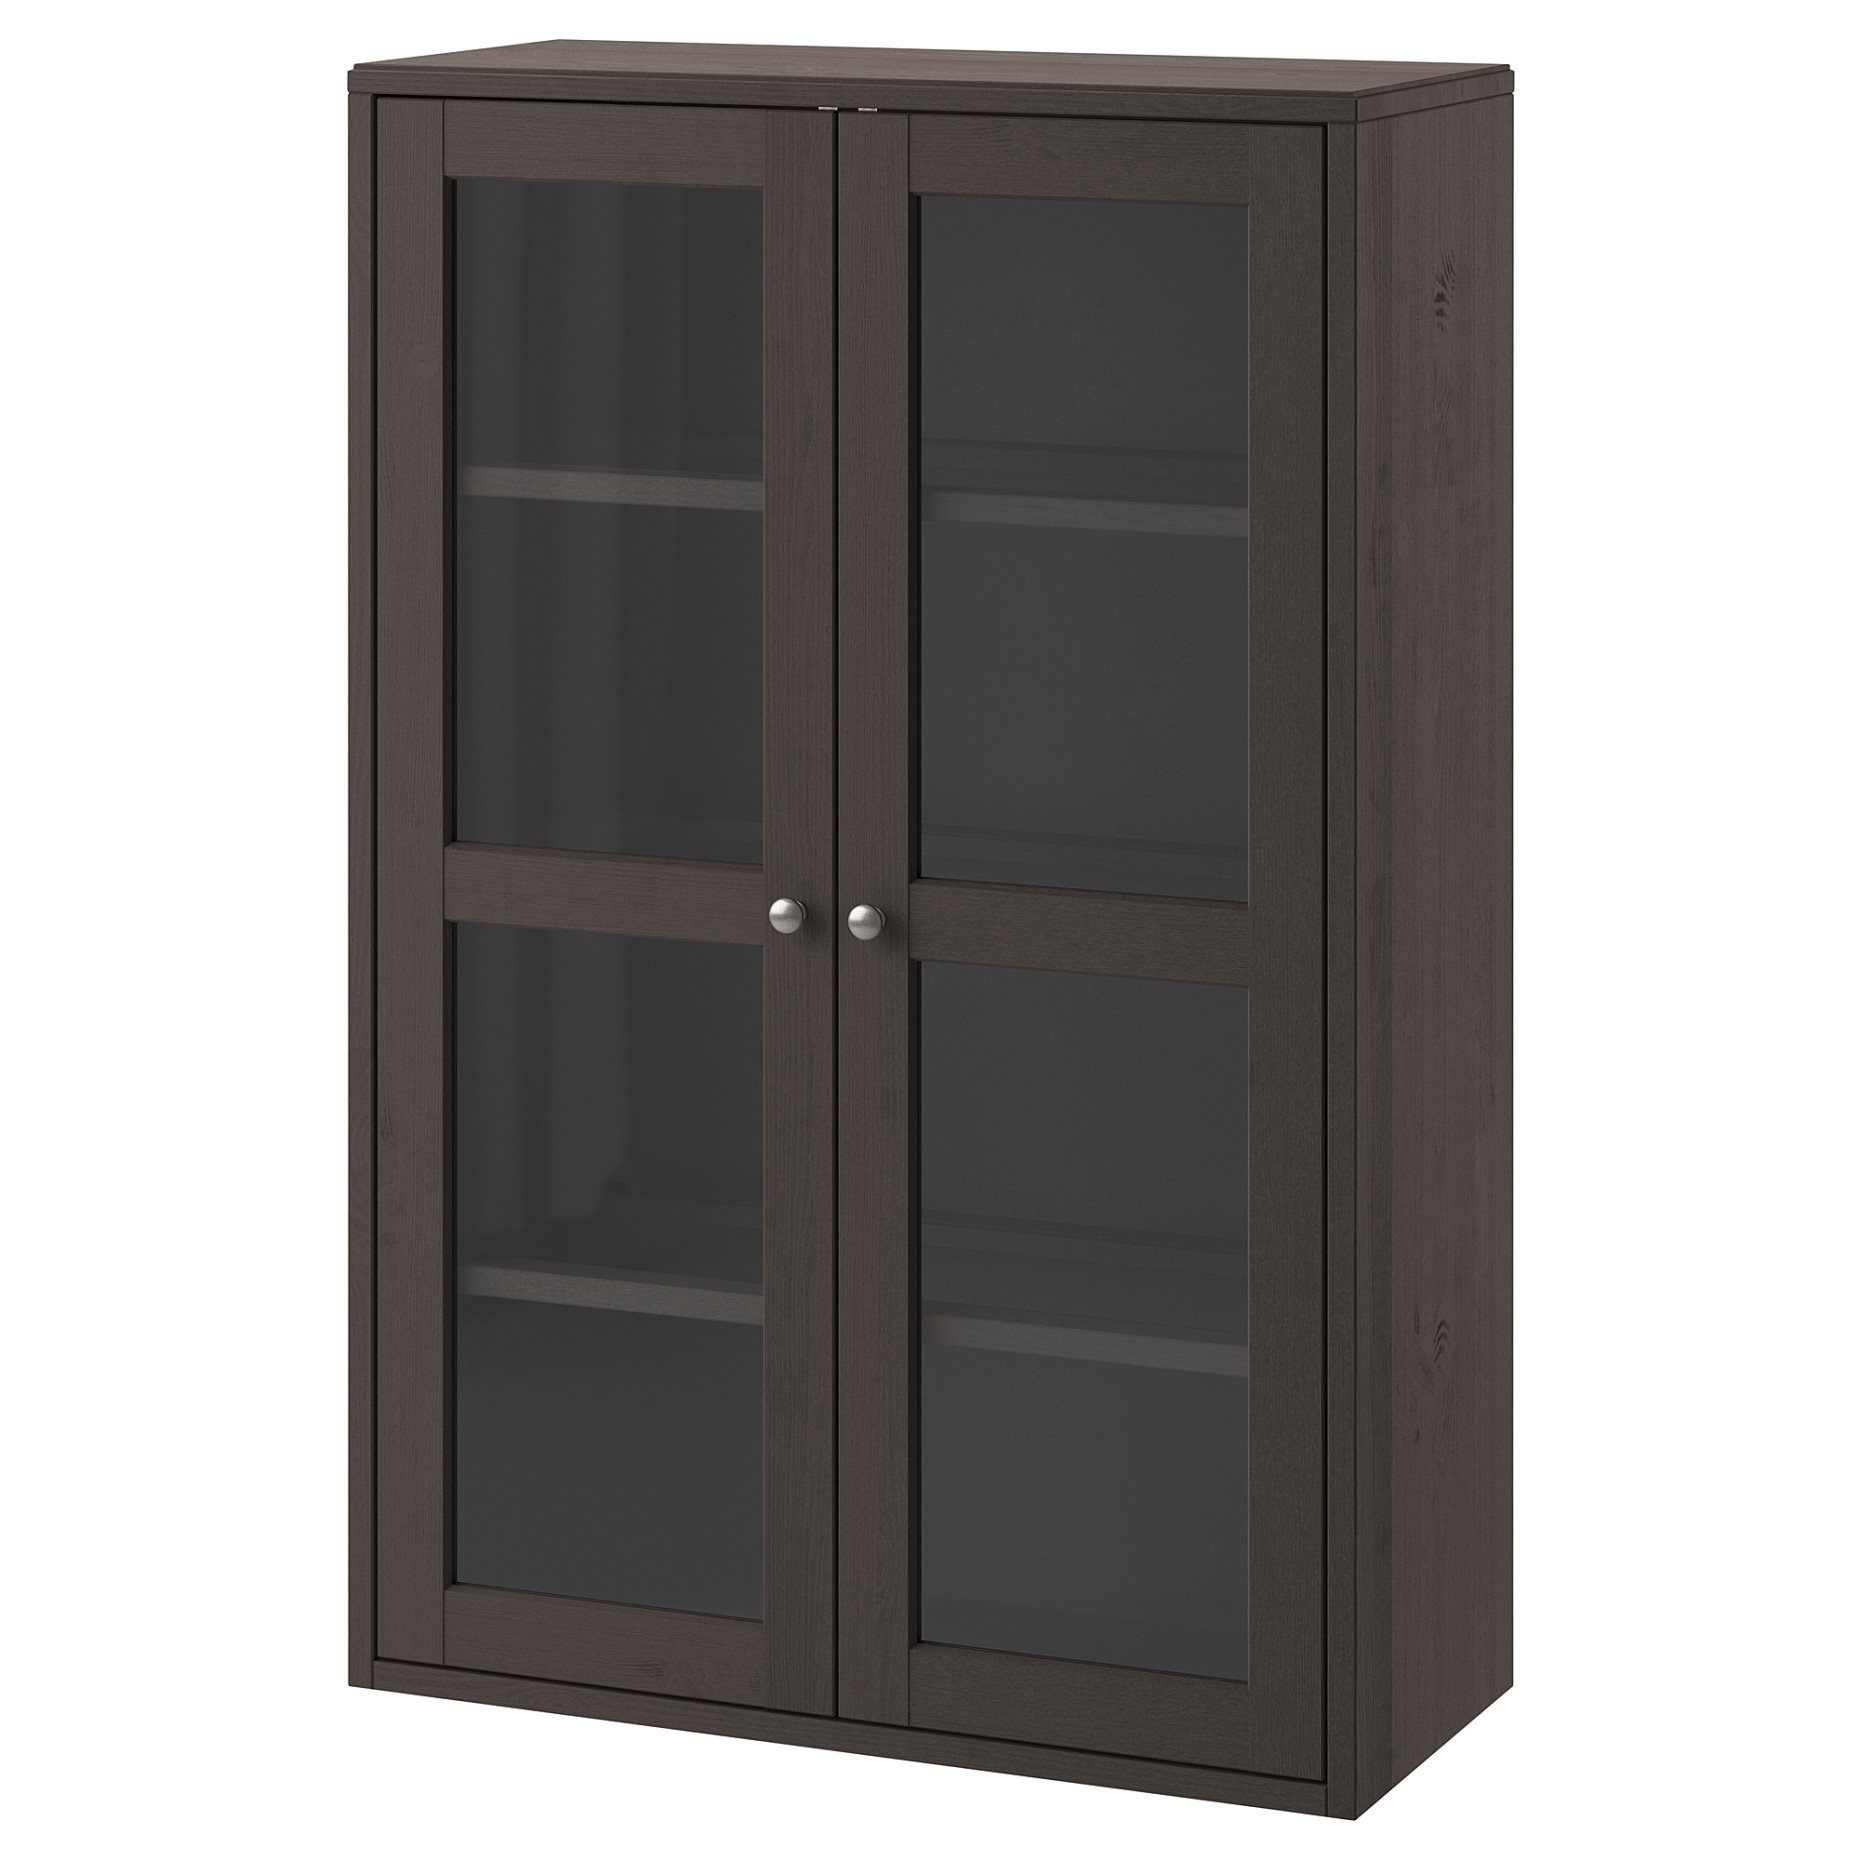 HAVSTA, glass-door cabinet, 303.910.59